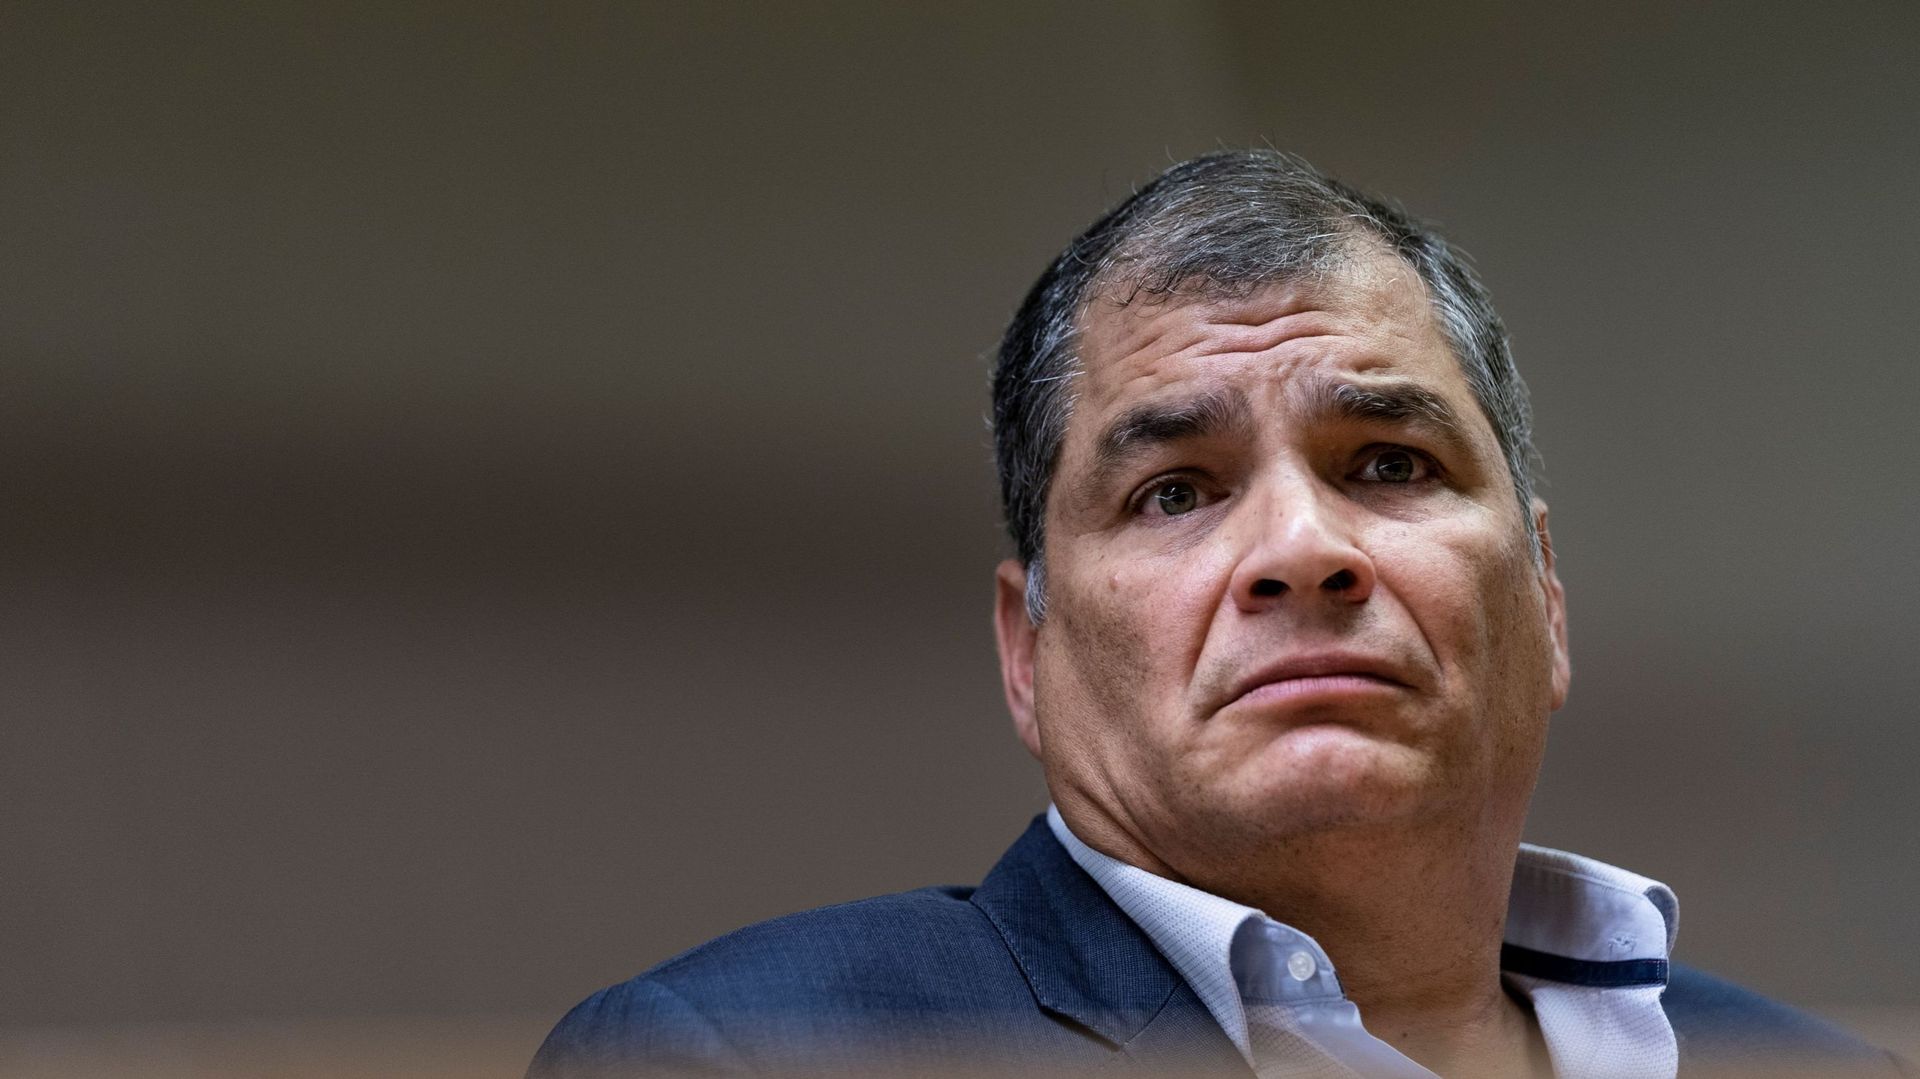 L’Equateur ordonne l’arrestation de l’ex-président Correa en exil en Belgique